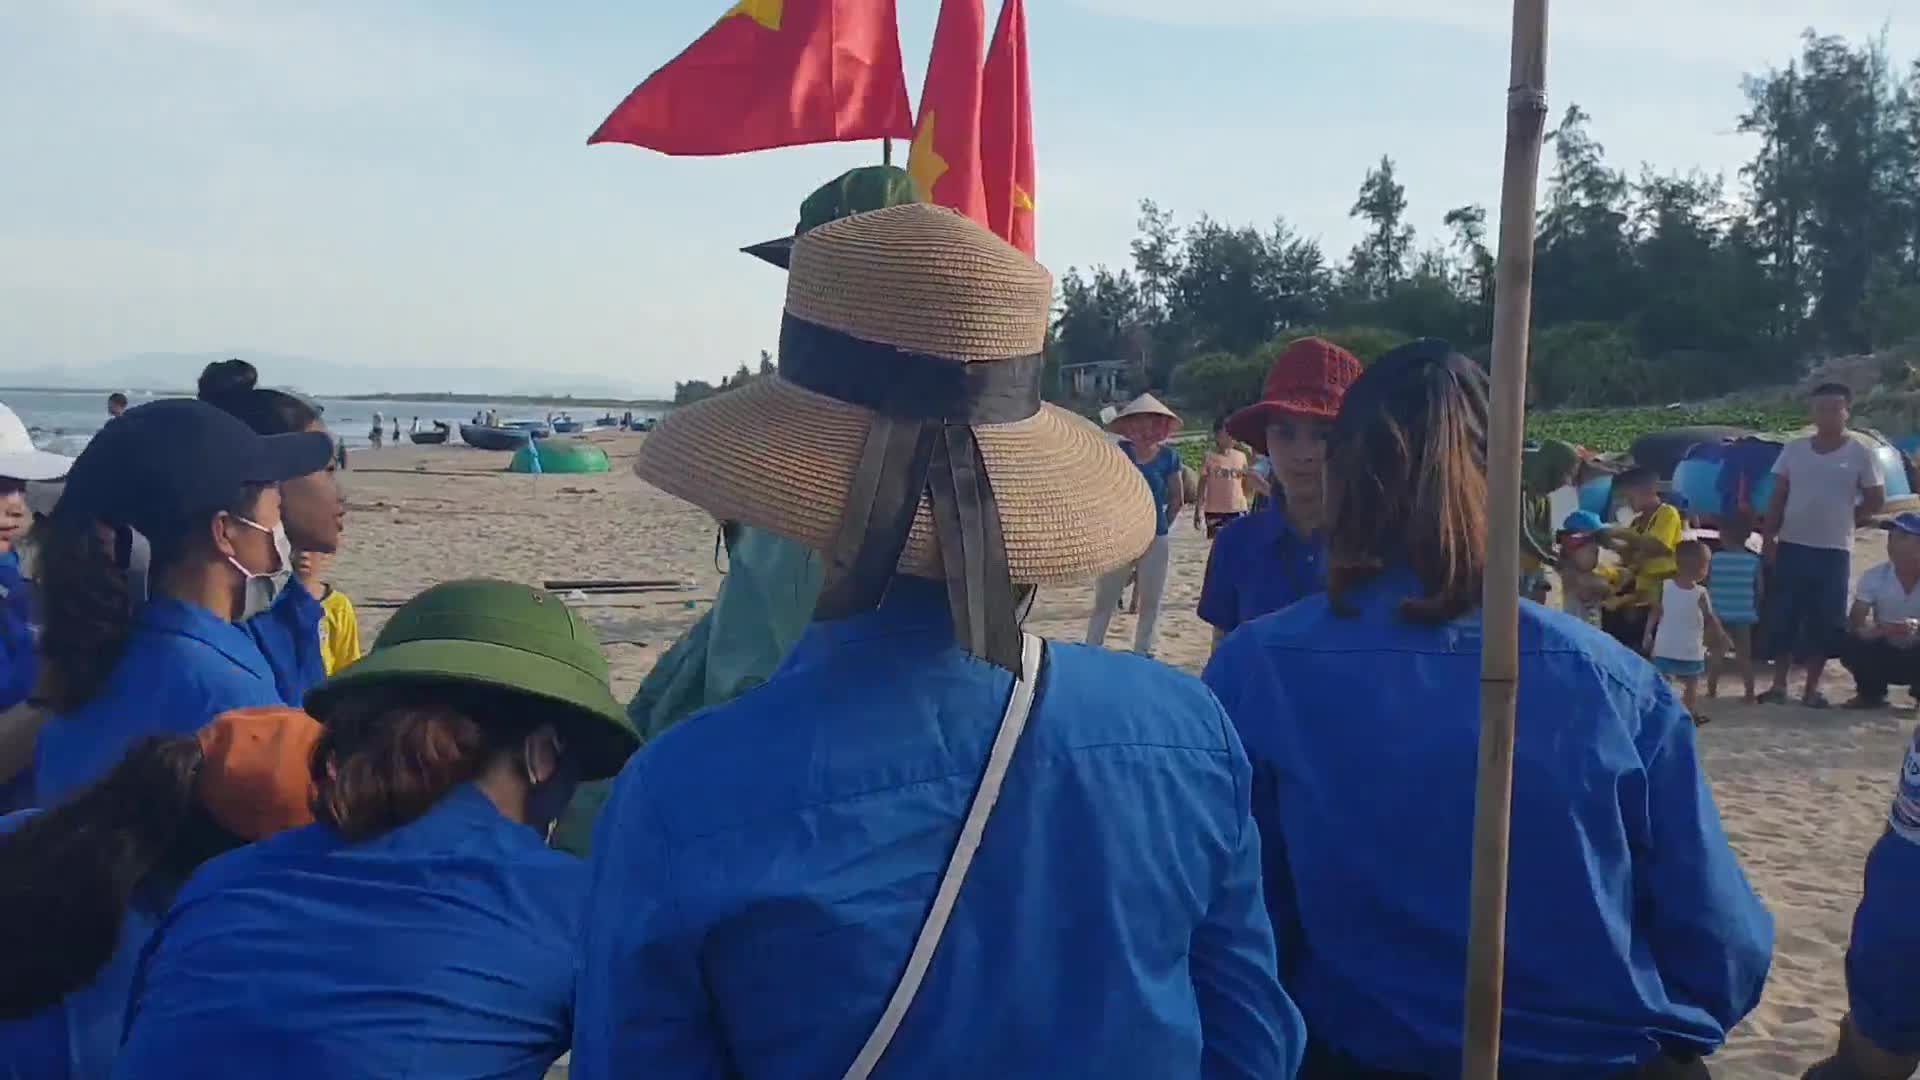 Hoa hậu Tiểu Vy chung tay cùng các đoàn viên nhặt rác làm sạch bãi biển